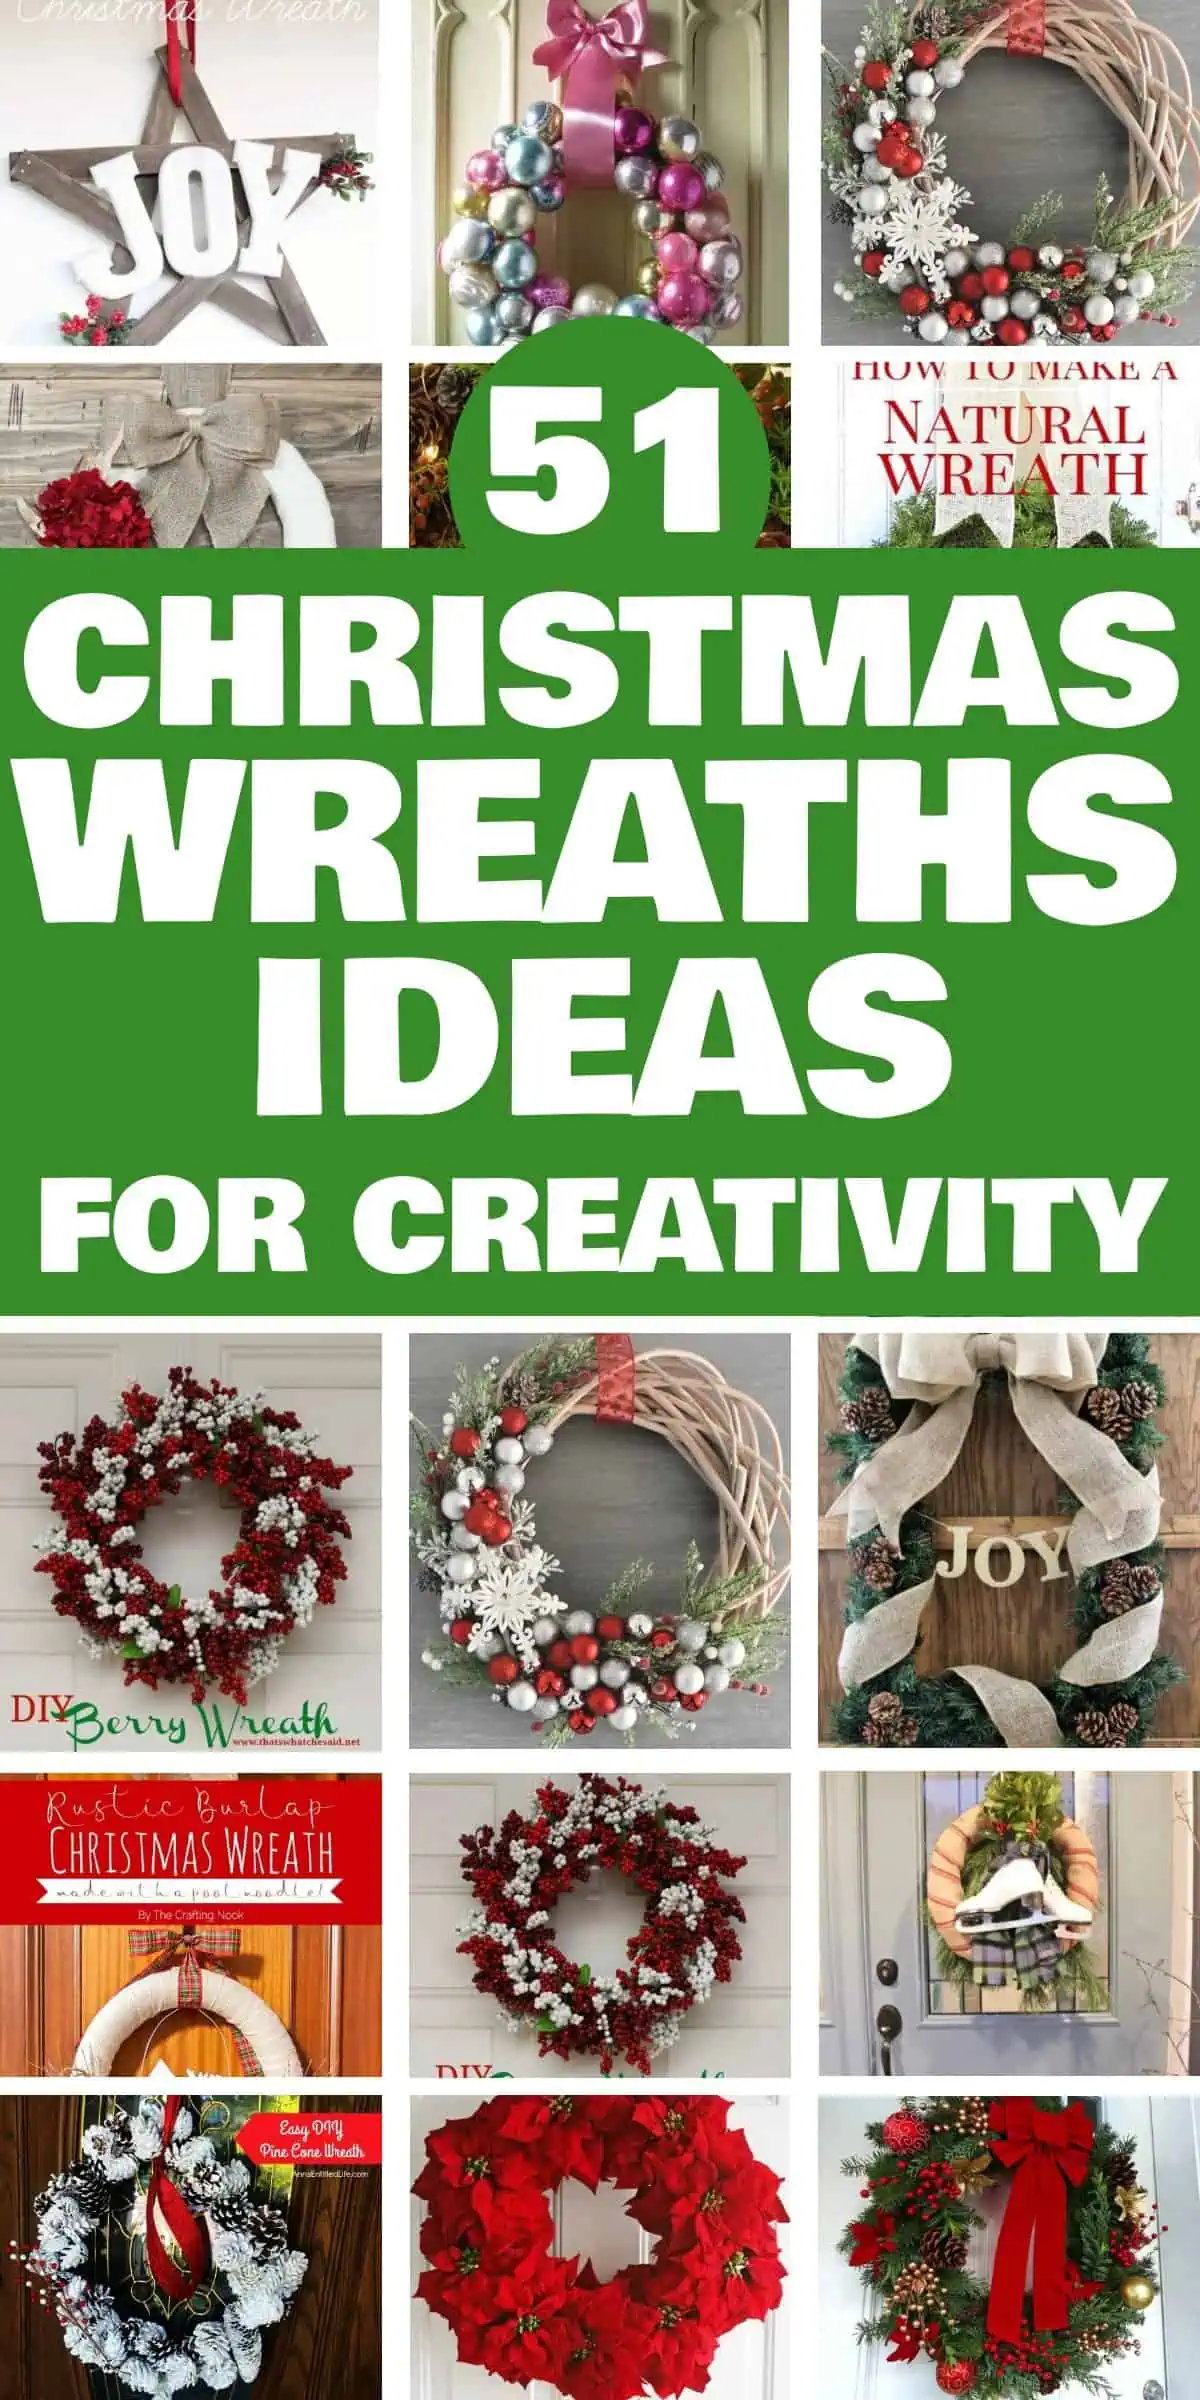 51 Best Christmas Wreaths Ideas 1685687